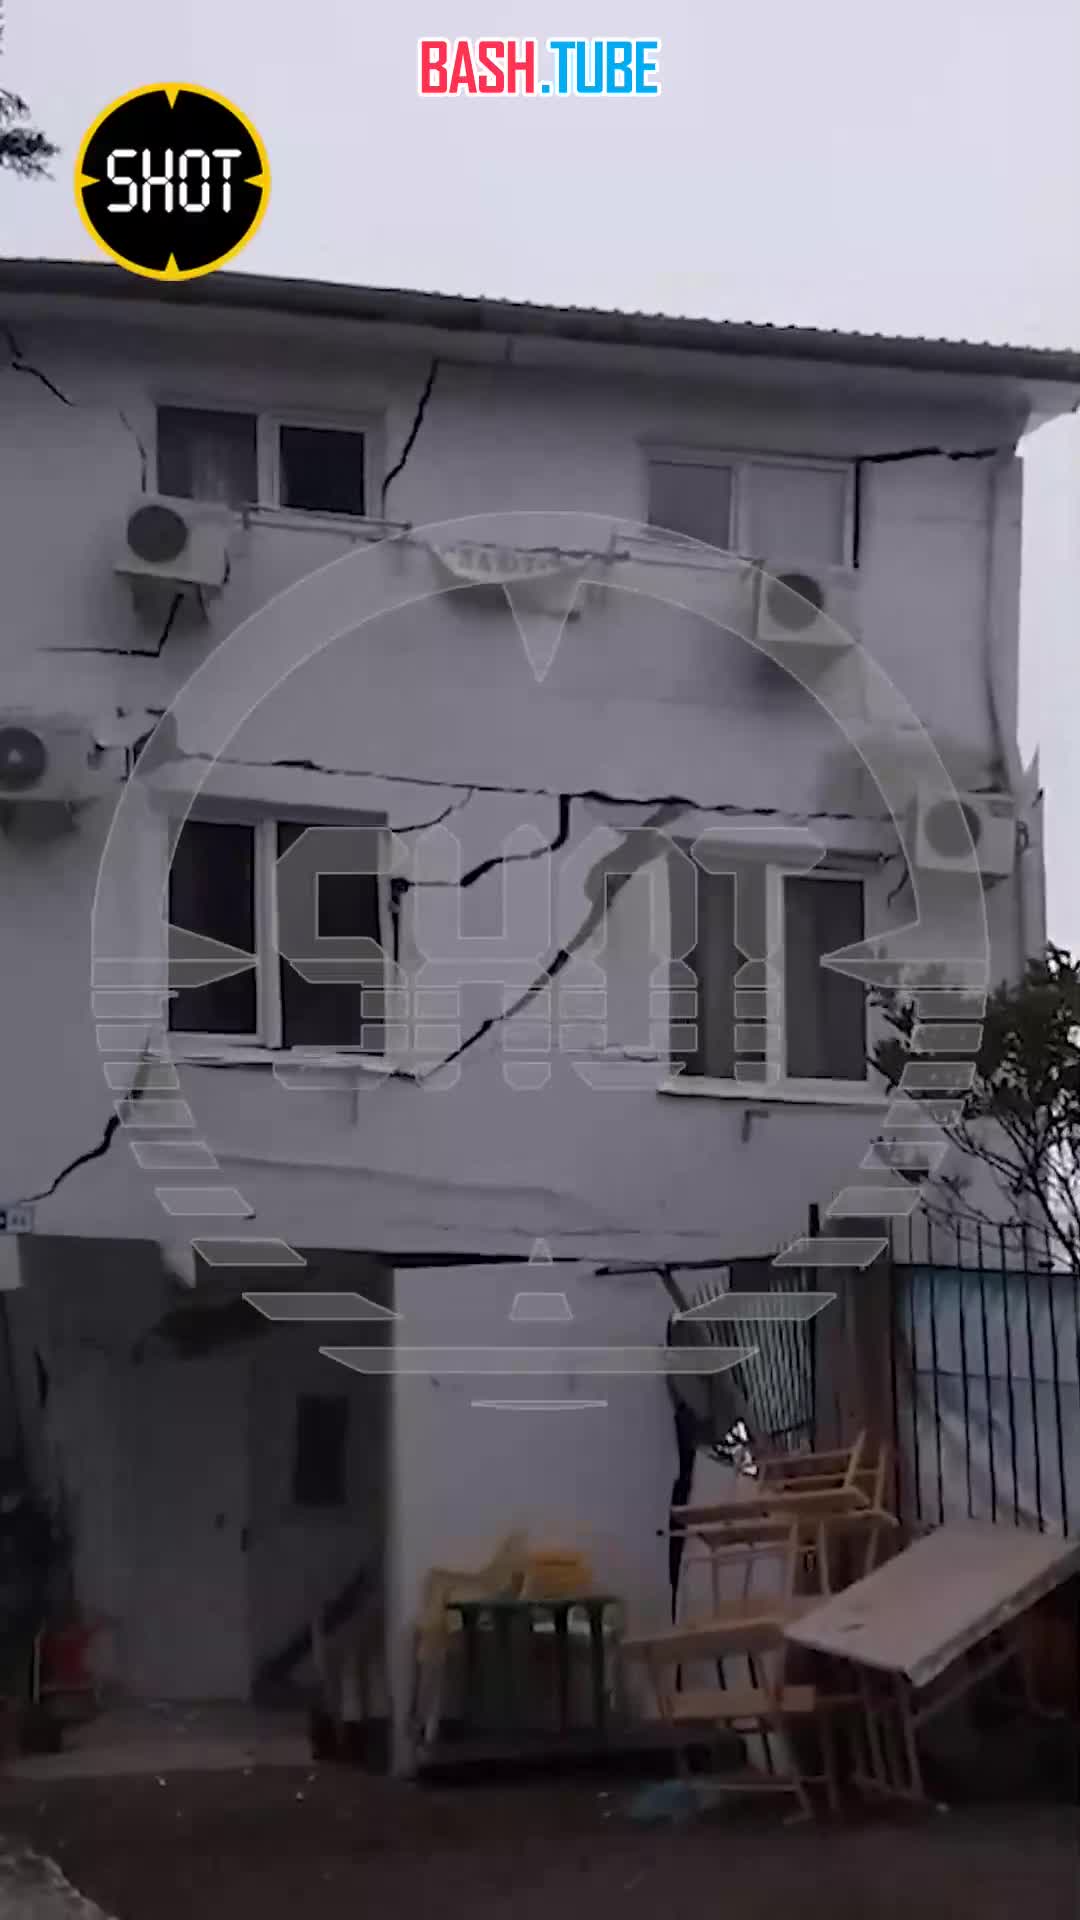  Трехэтажный дом рухнул в Сочи в результате разгула стихии - землю под ним подмыло, и здание обвалилось